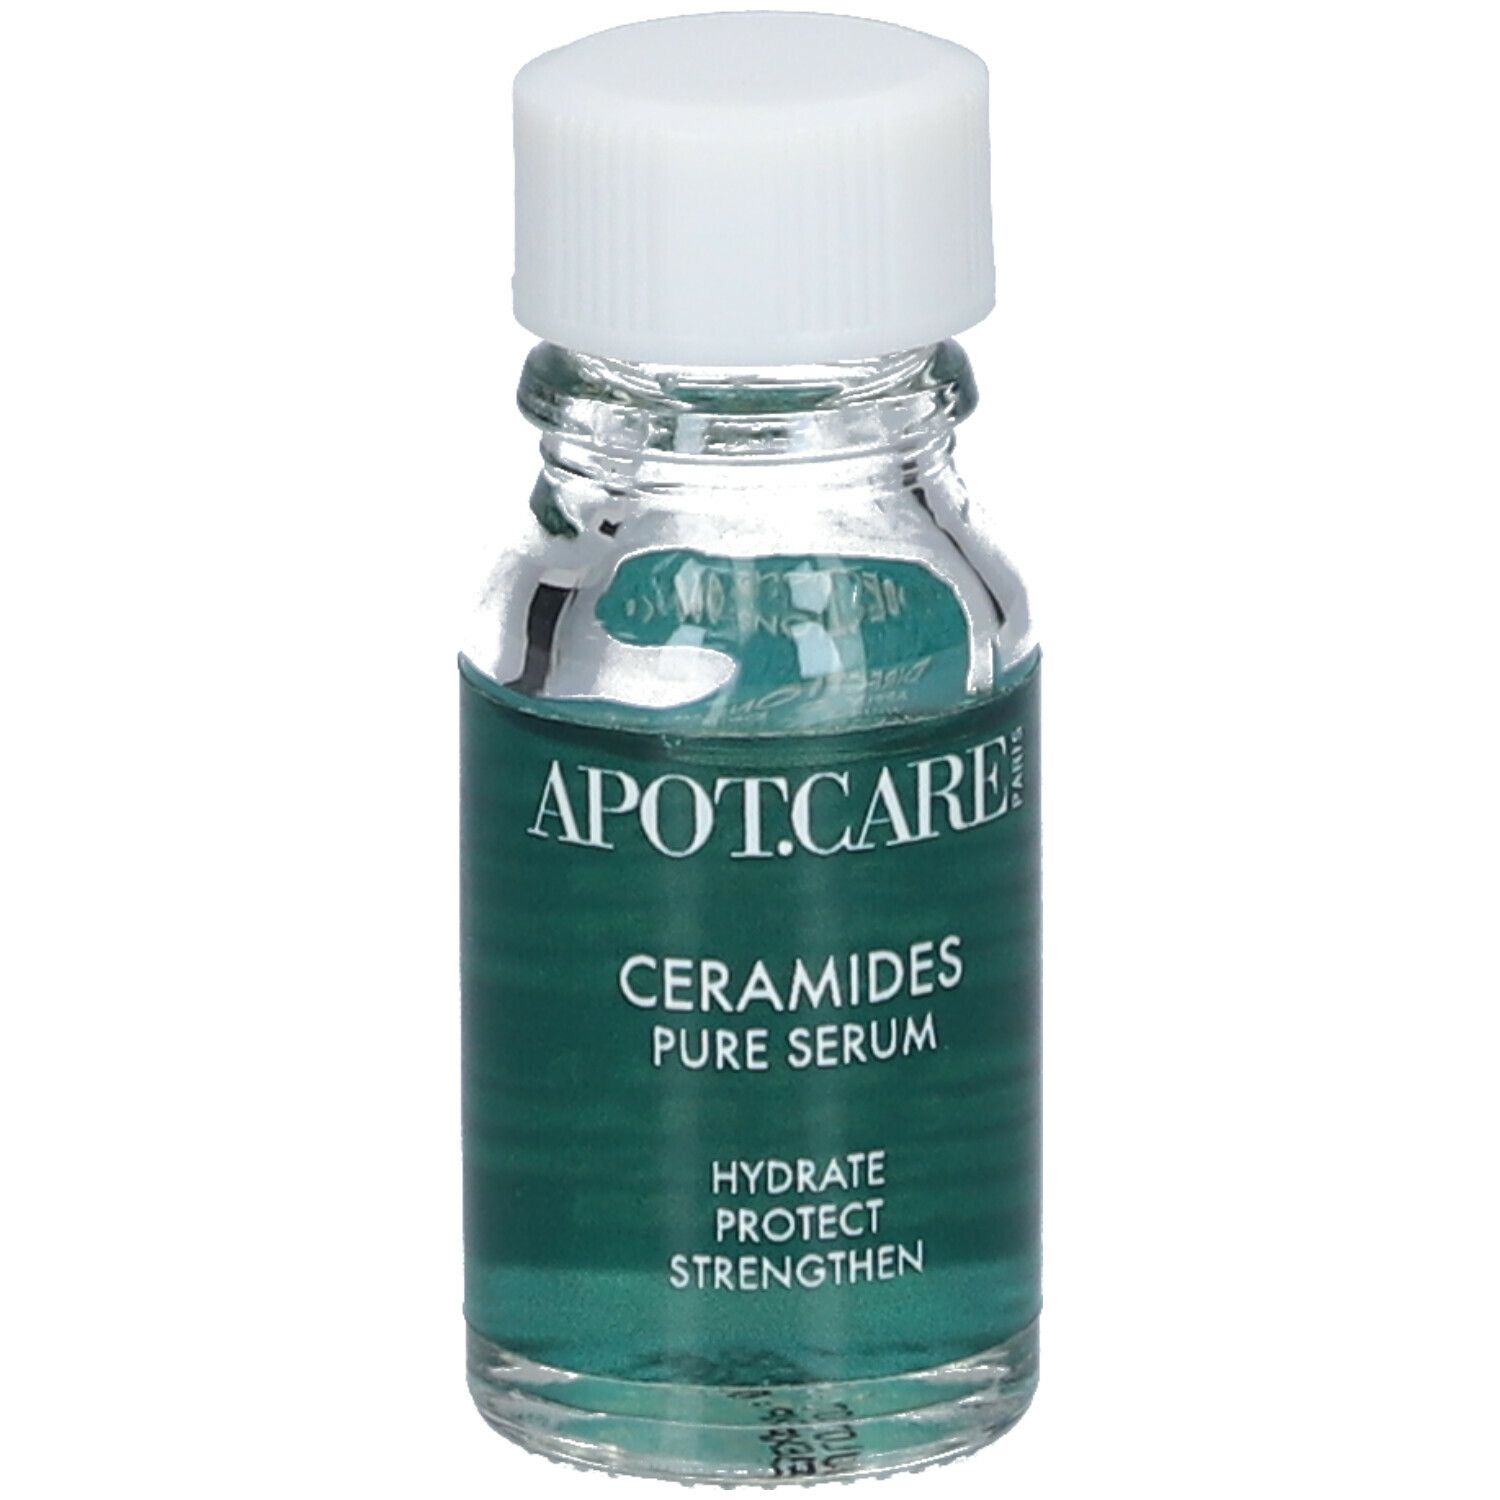 APOT.CARE Ceramides Pure Serum